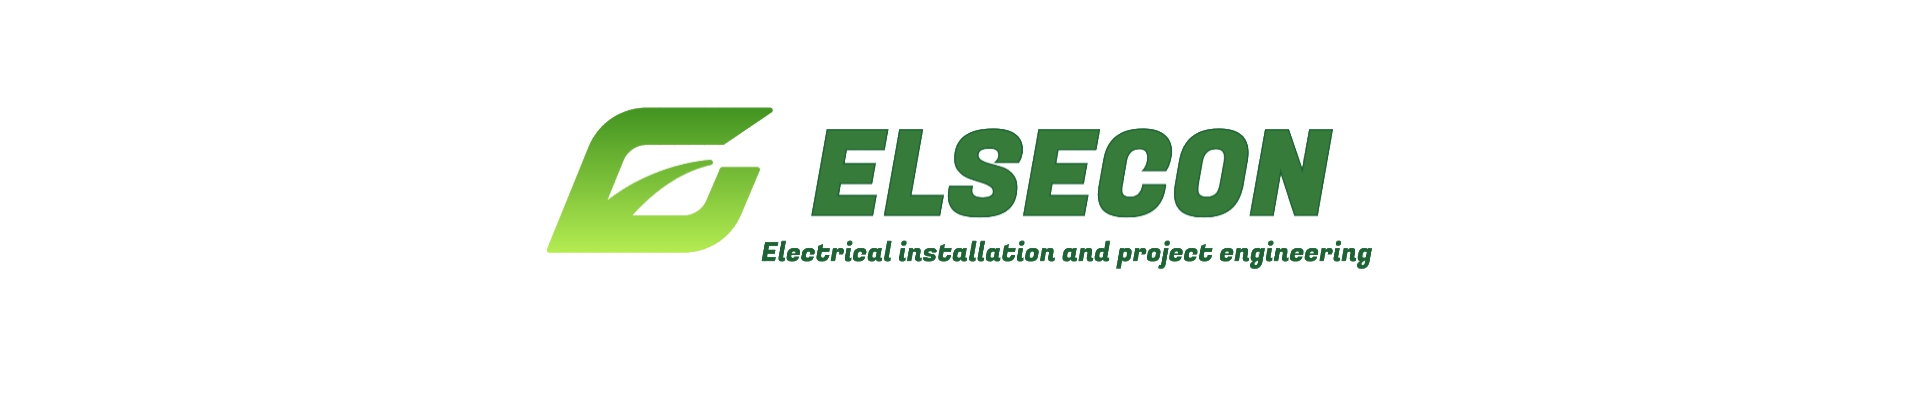 ELEKTER - AUTOMAATIKA - NÕRKVOOL Elekter - Automaatika - Nõrkvool - Projekteerimine ELSECON OÜ https://www.elsecon.ee elektritööd